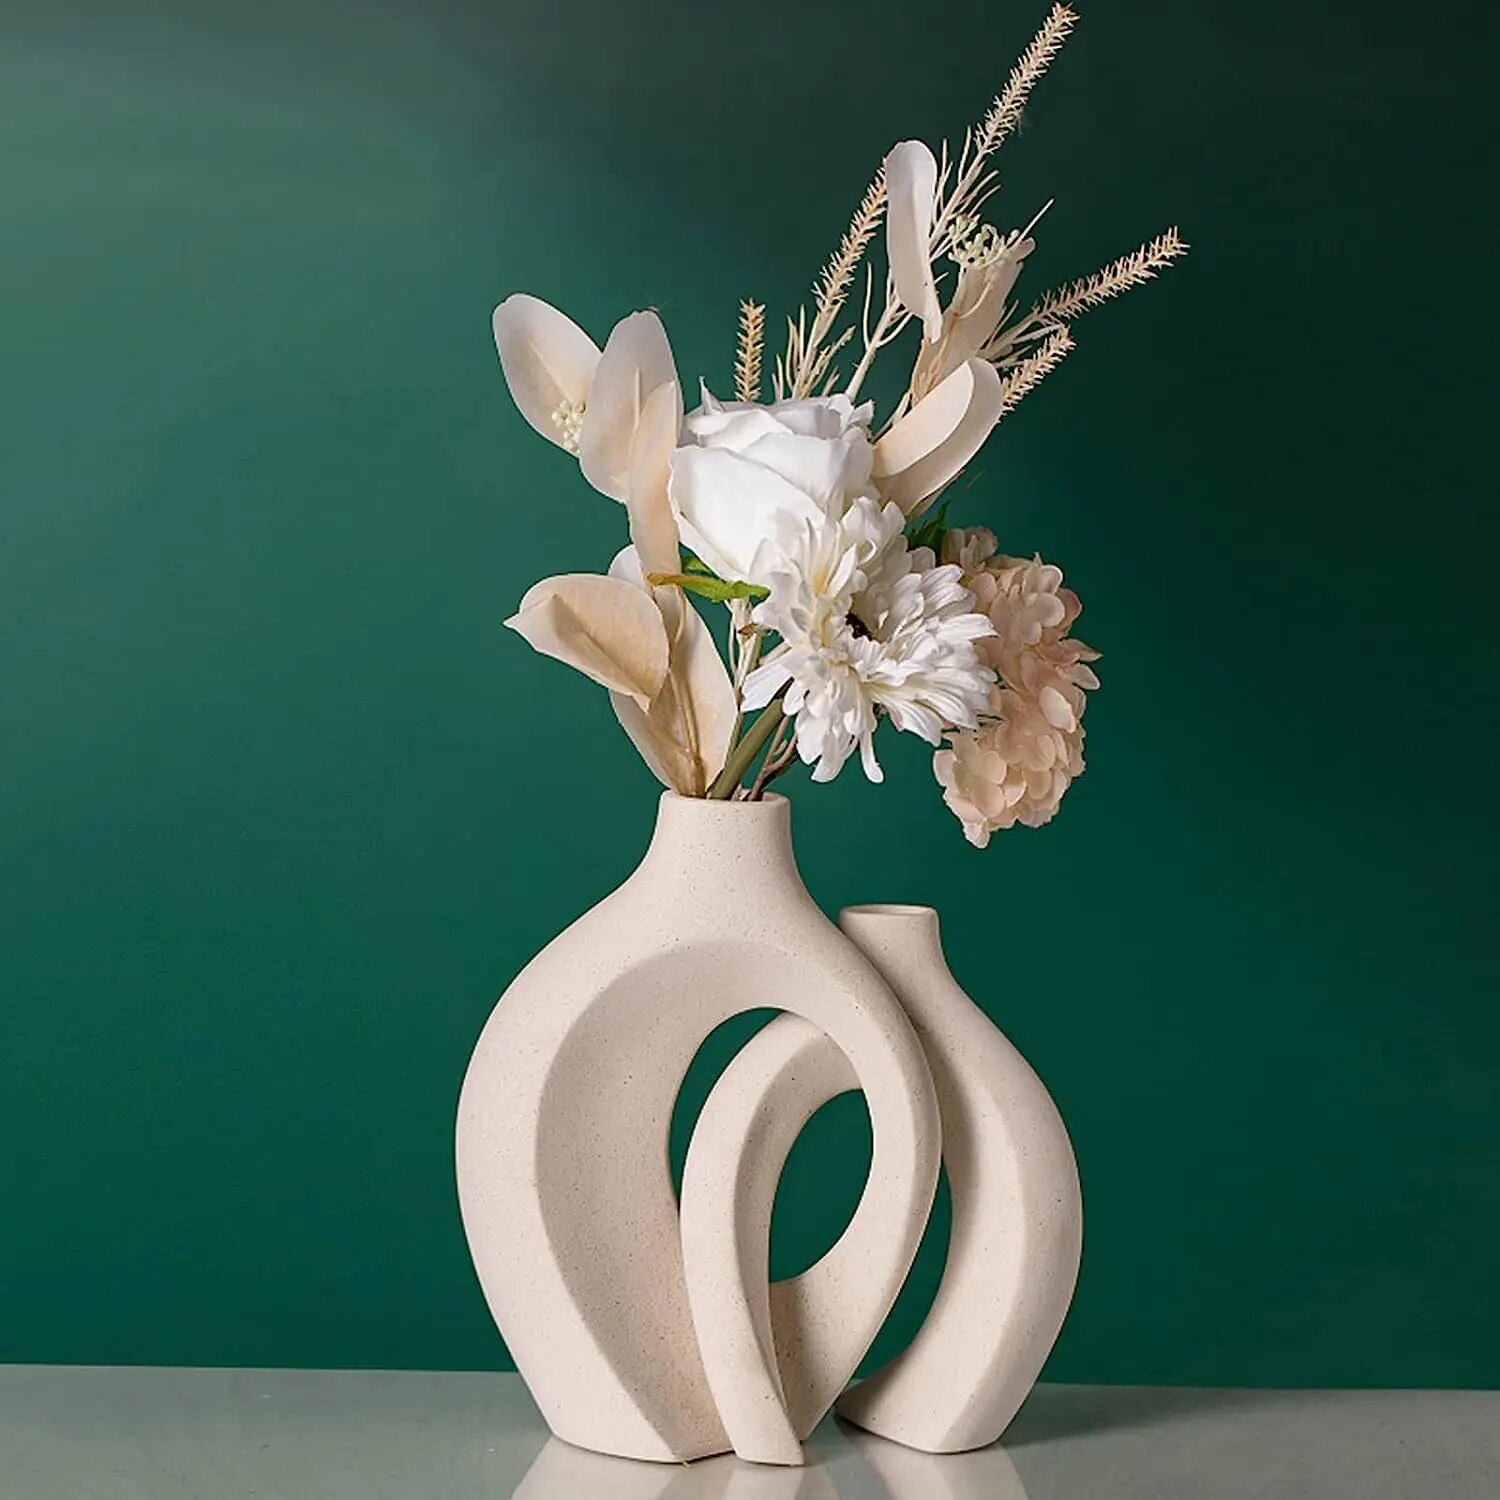 Lot-de-2-vases-en-c-ramique-blanche-pour-la-d-coration-int-rieure-moderne-vases